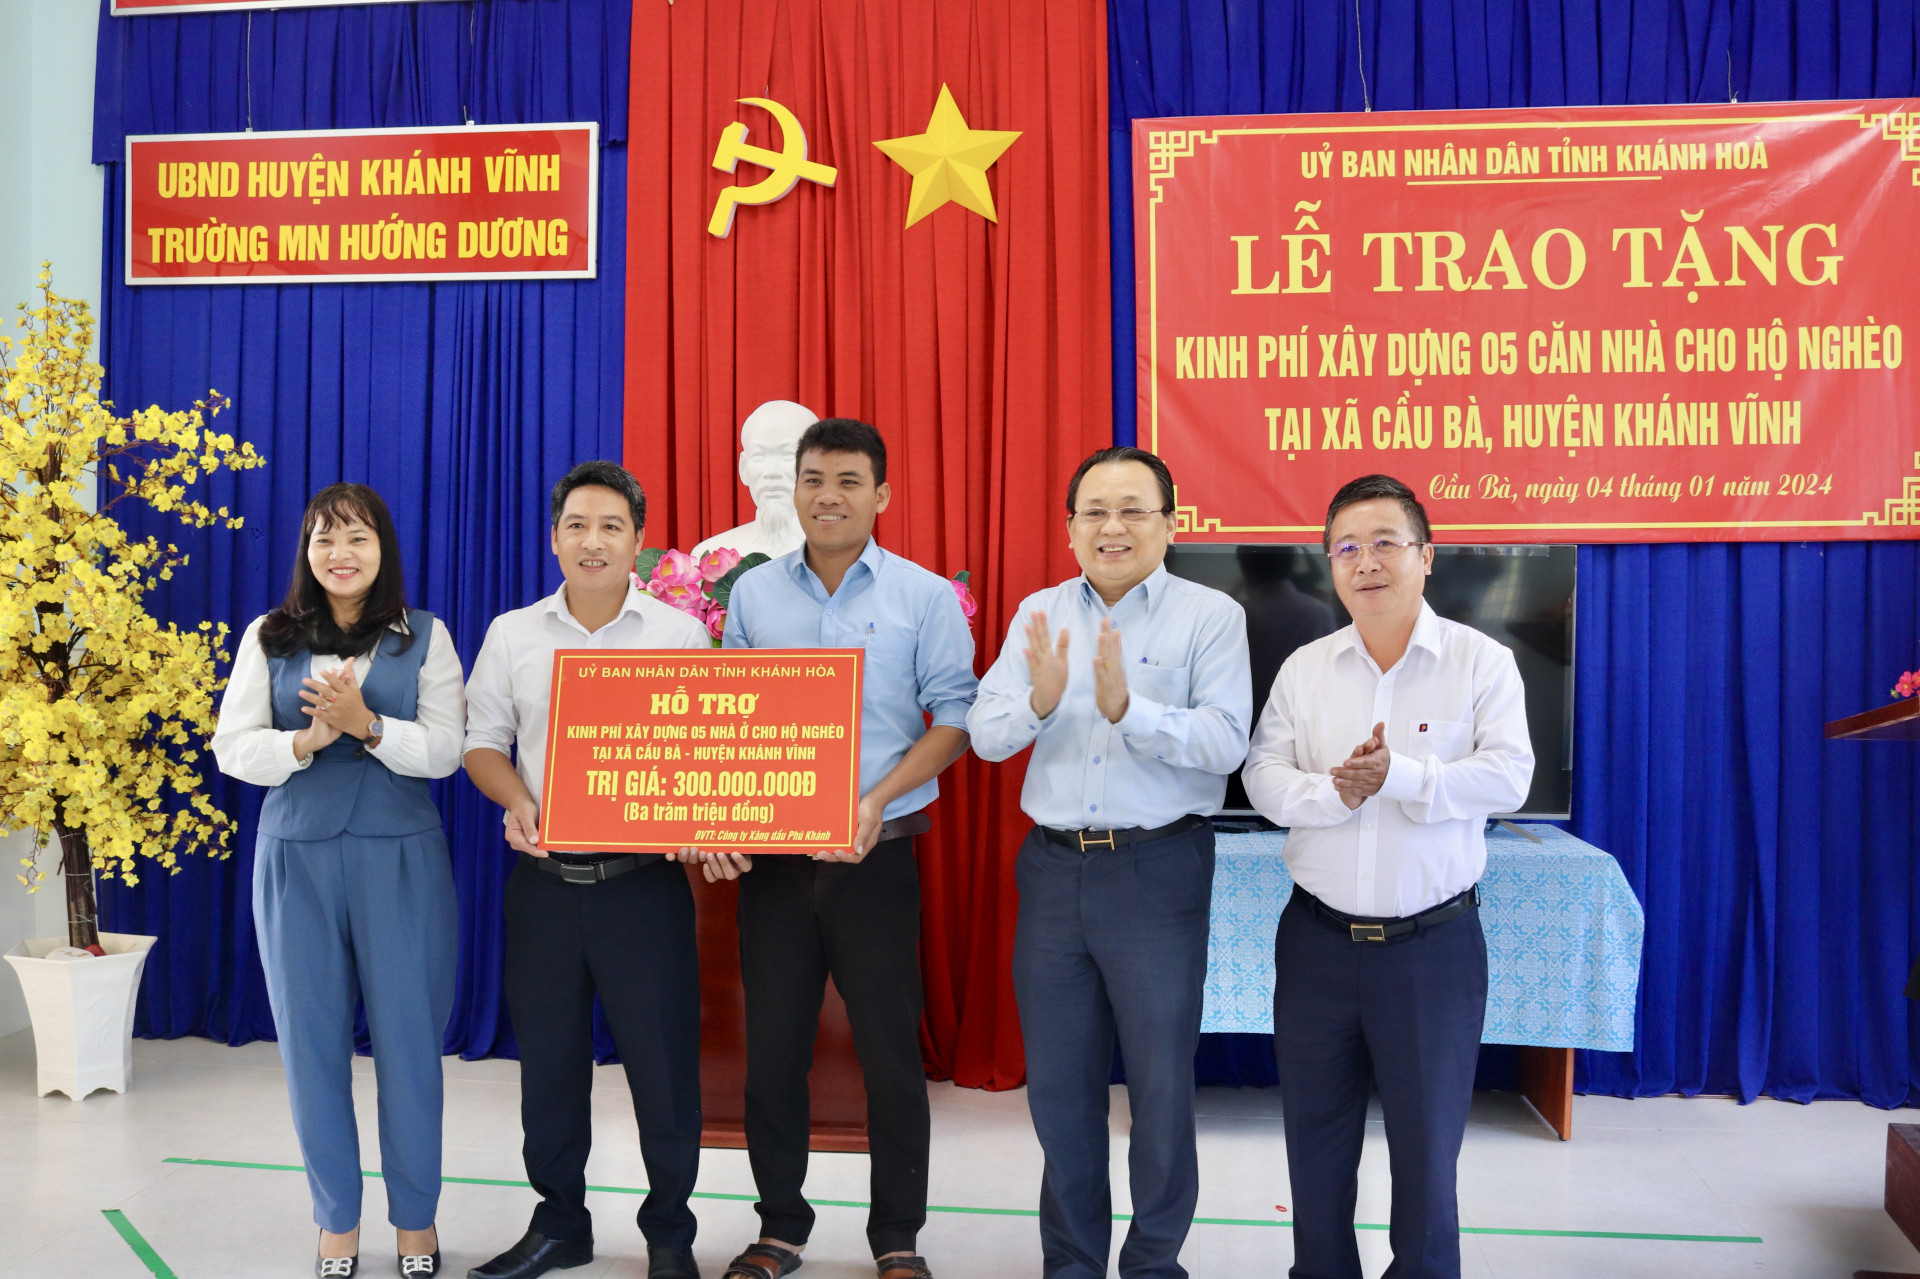 Ông Lê Hữu Hoàng cùng lãnh đạo: huyện Khánh Vĩnh, xã Cầu Bà, Công ty Xăng Dầu Phú Khánh trao kinh phí hỗ trợ xây 5 căn nhà cho người nghèo.